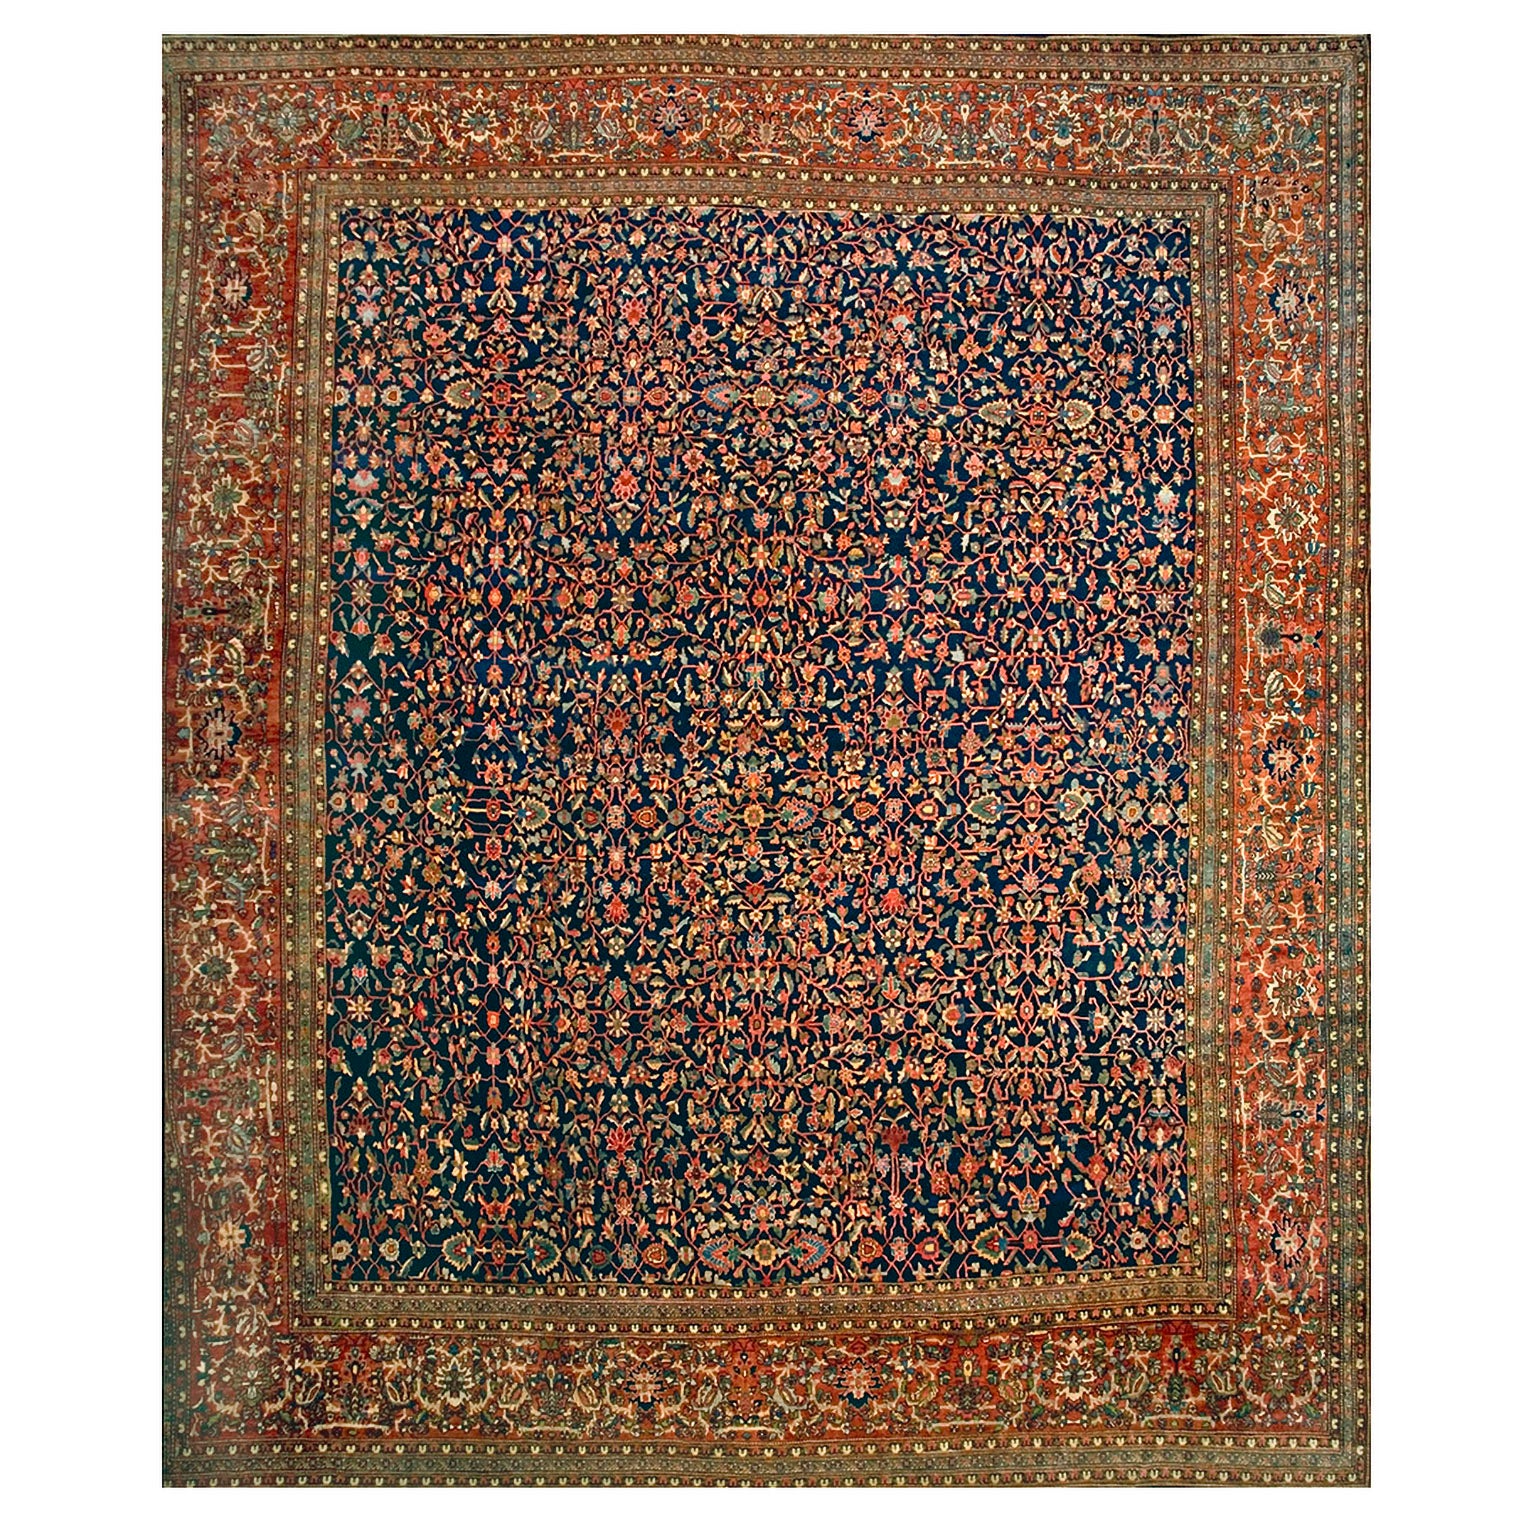 19th Century Persian Sarouk Farahan Carpet ( 14'3" x 17'2" - 434 x 523 )